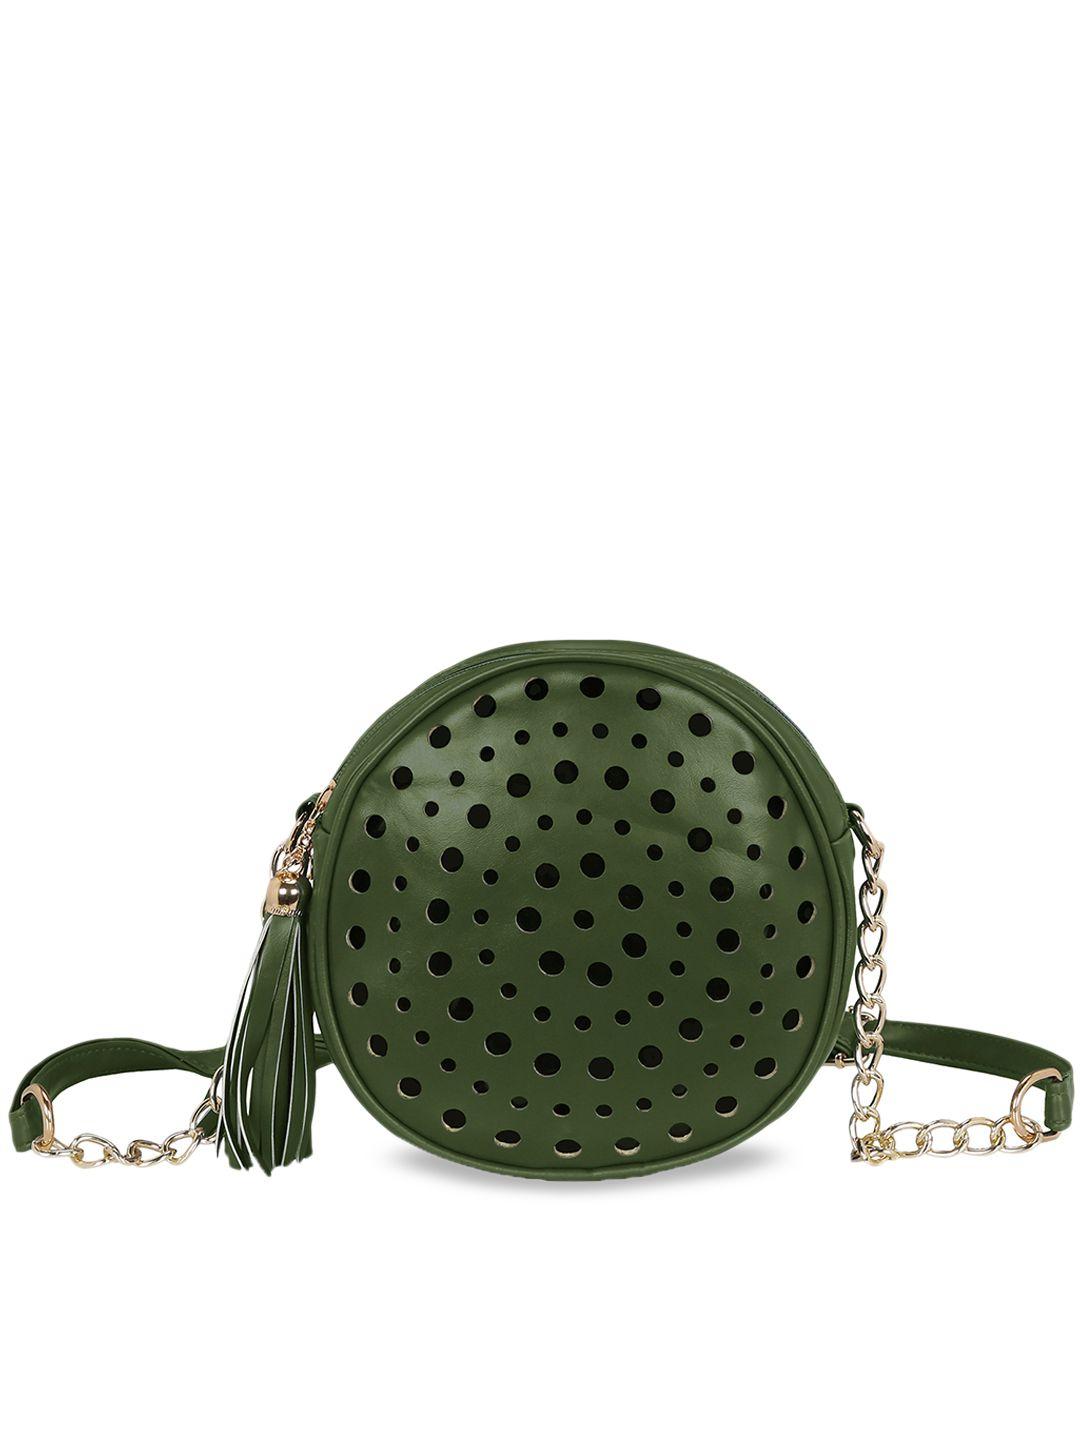 kleio olive green solid sling bag